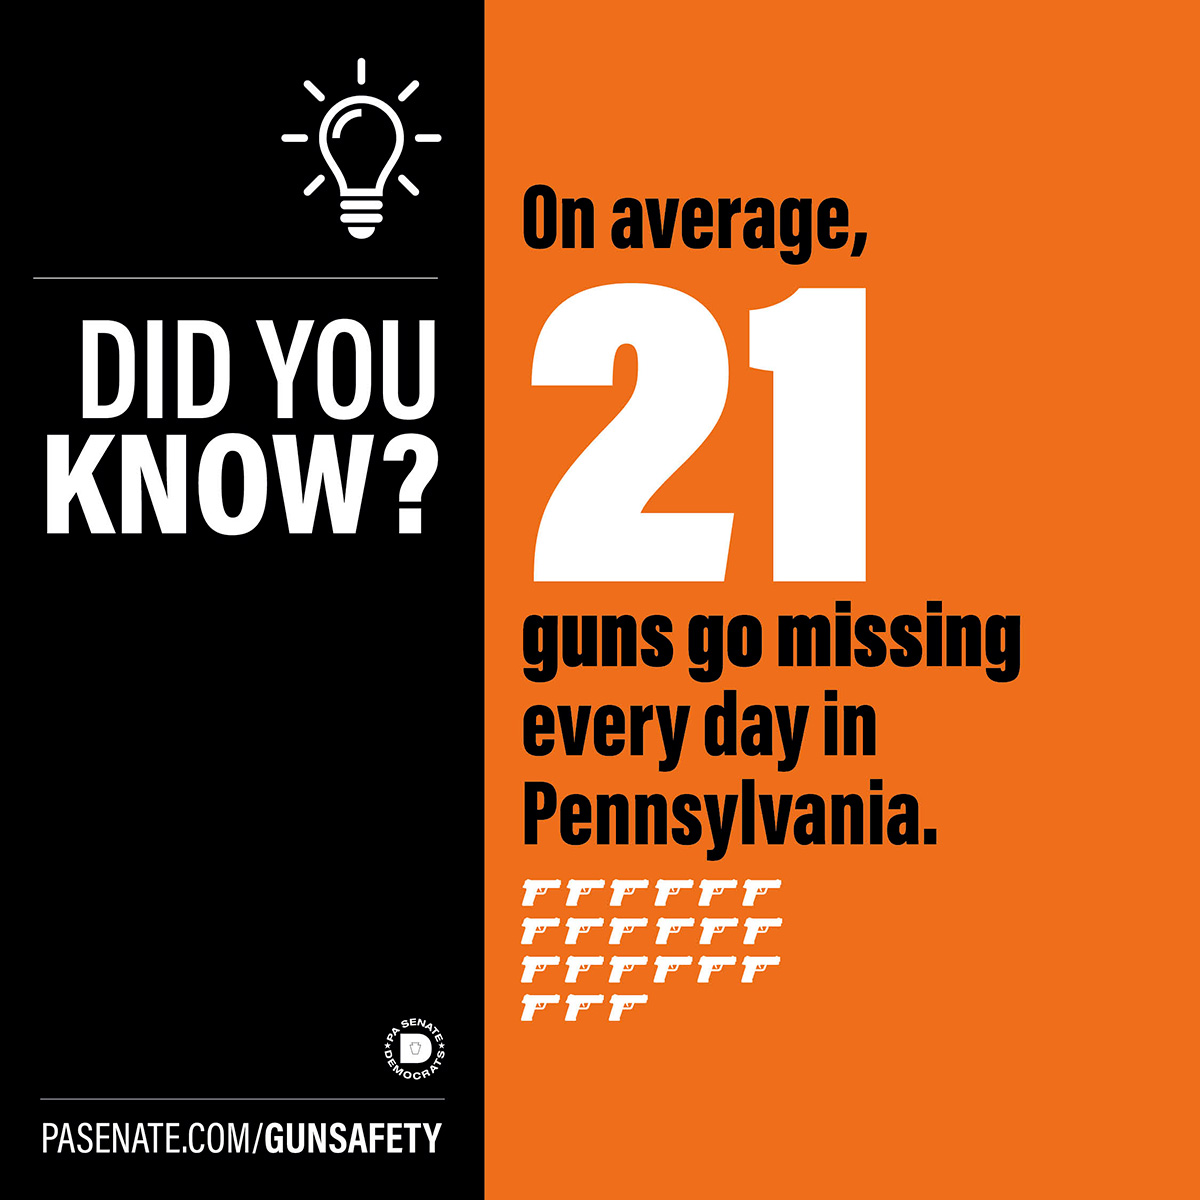 알고 계셨나요? 알고 계셨나요? 펜실베이니아주에서 매일 평균 21건의 총기가 분실됩니다.